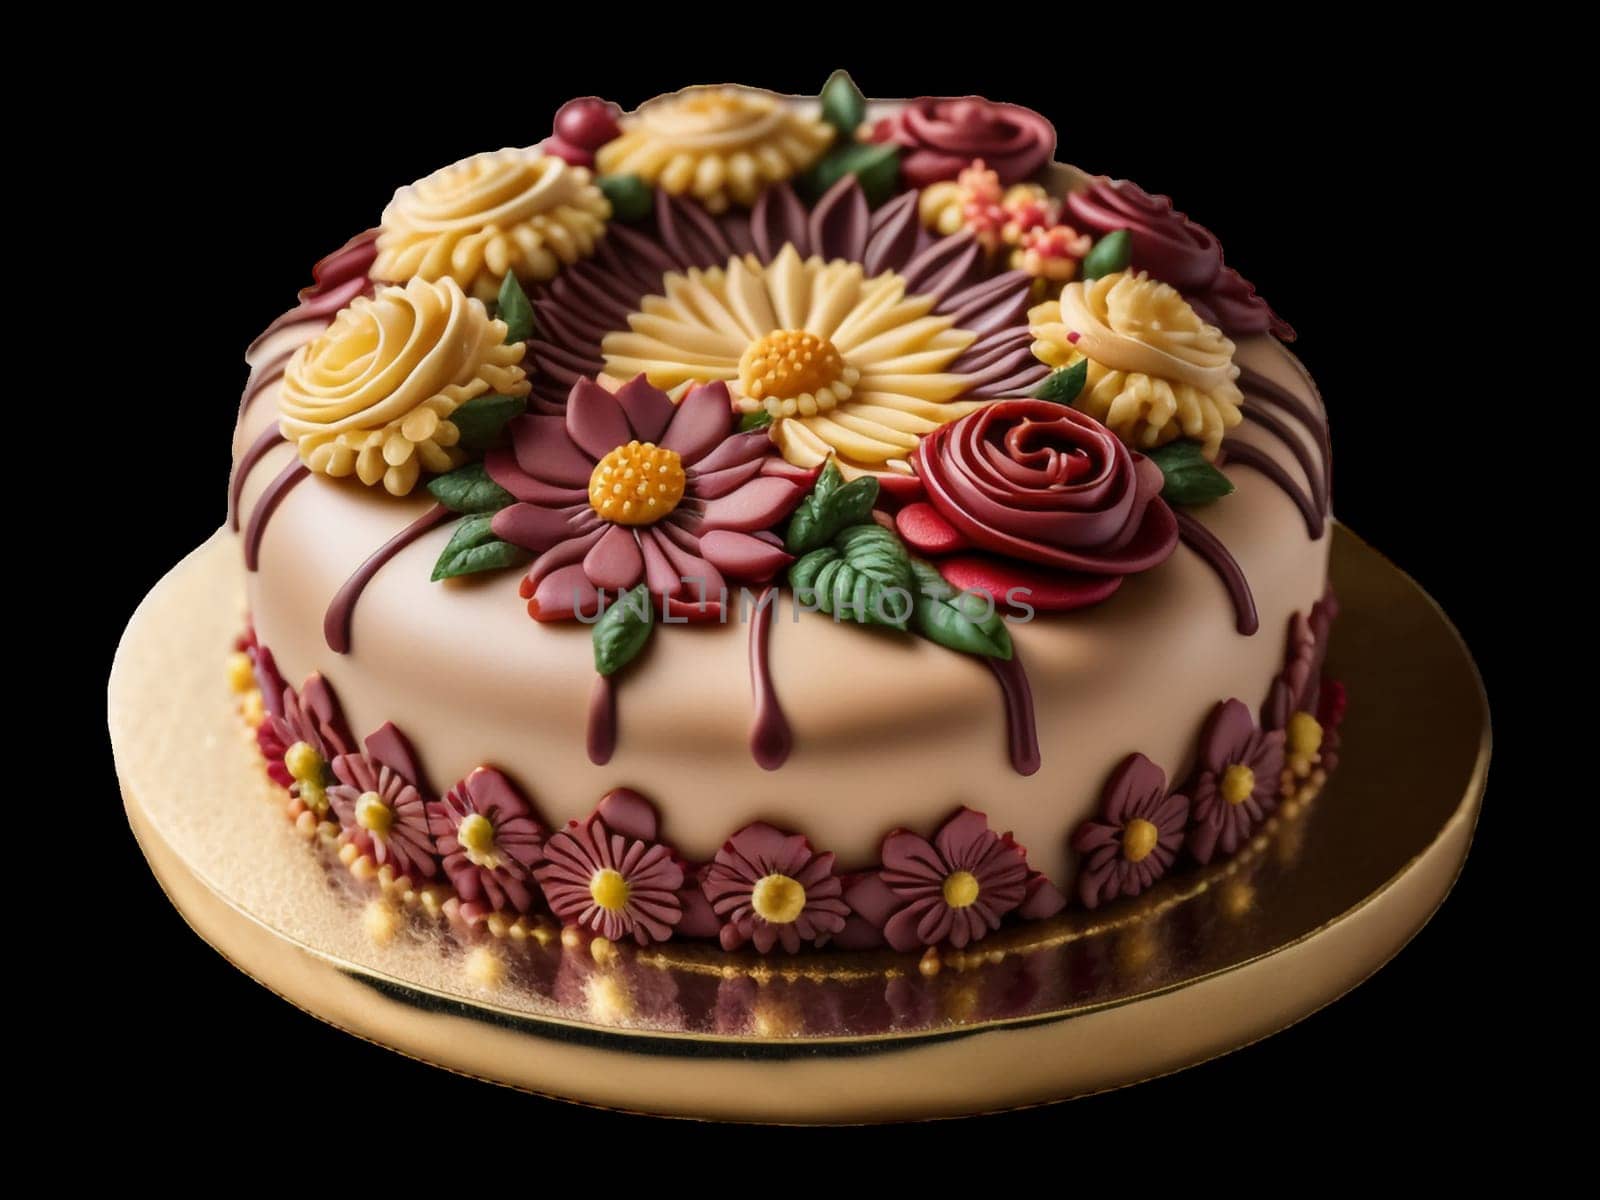 marzipan cake by gallofoto